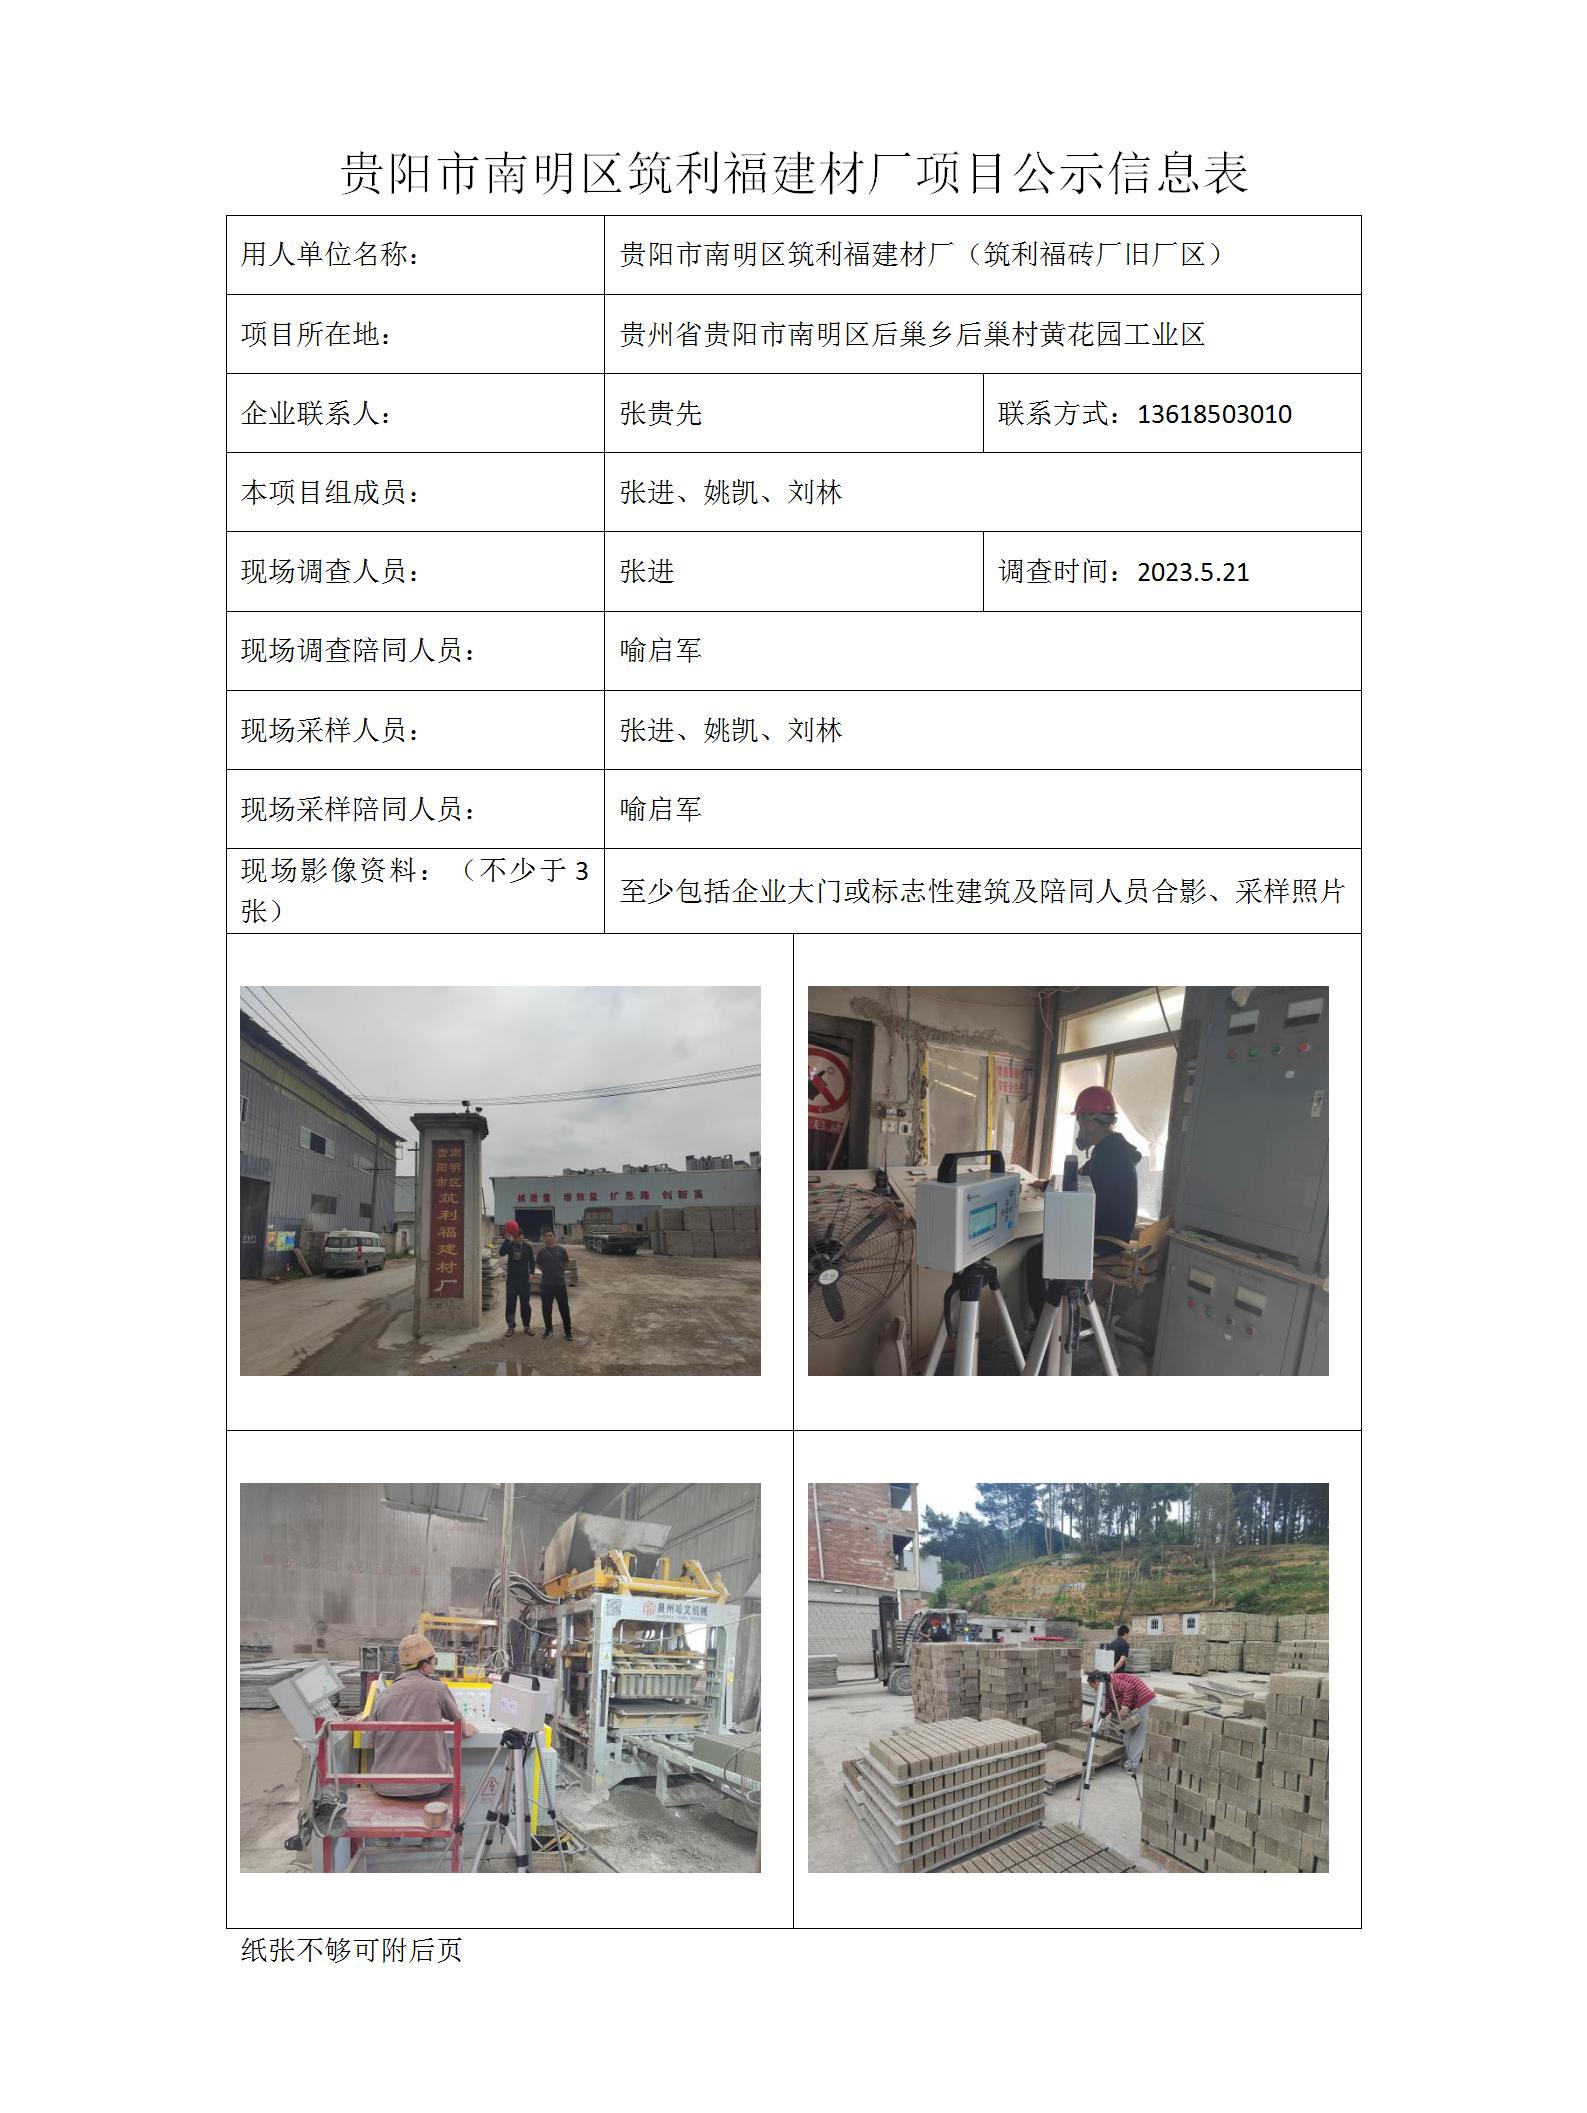 项目公示信息表-刘林-筑利福砖厂_01.jpg